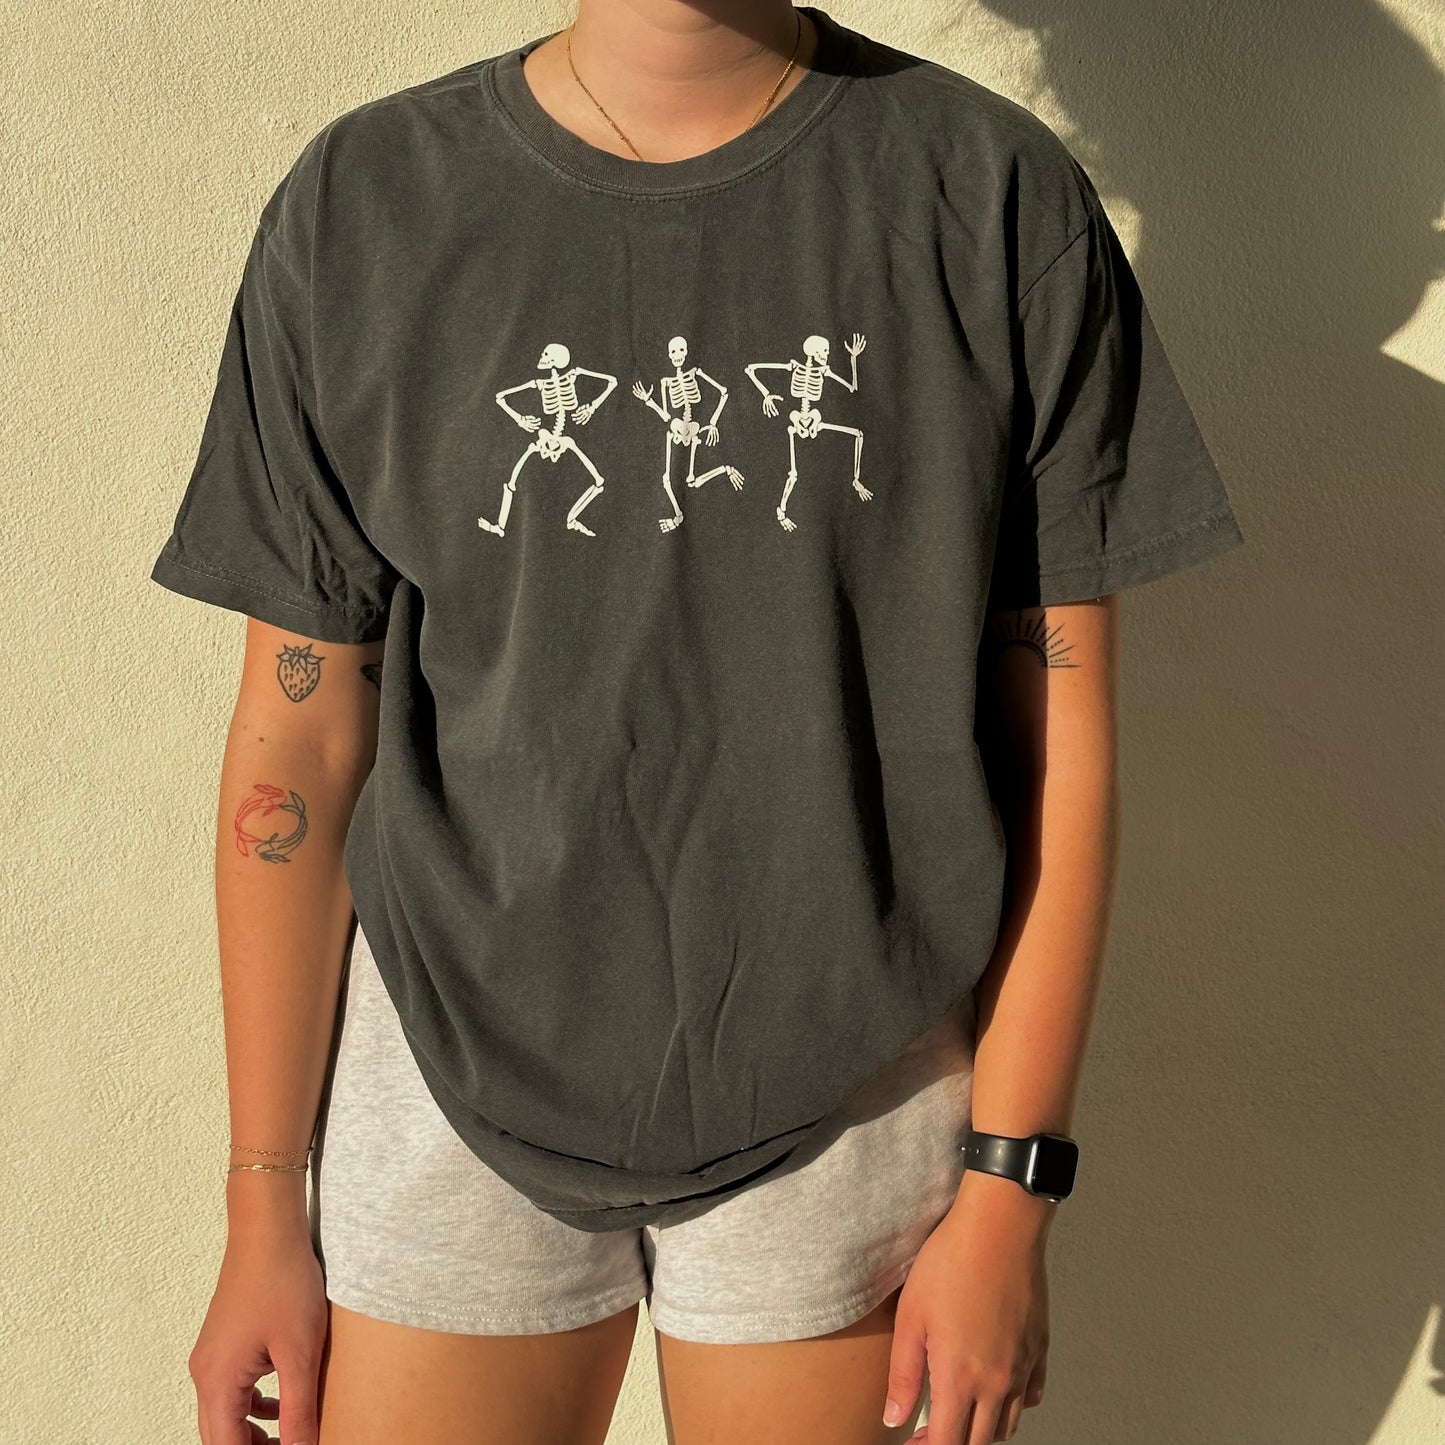 Dancing Skeletons T-shirt - Dark grey